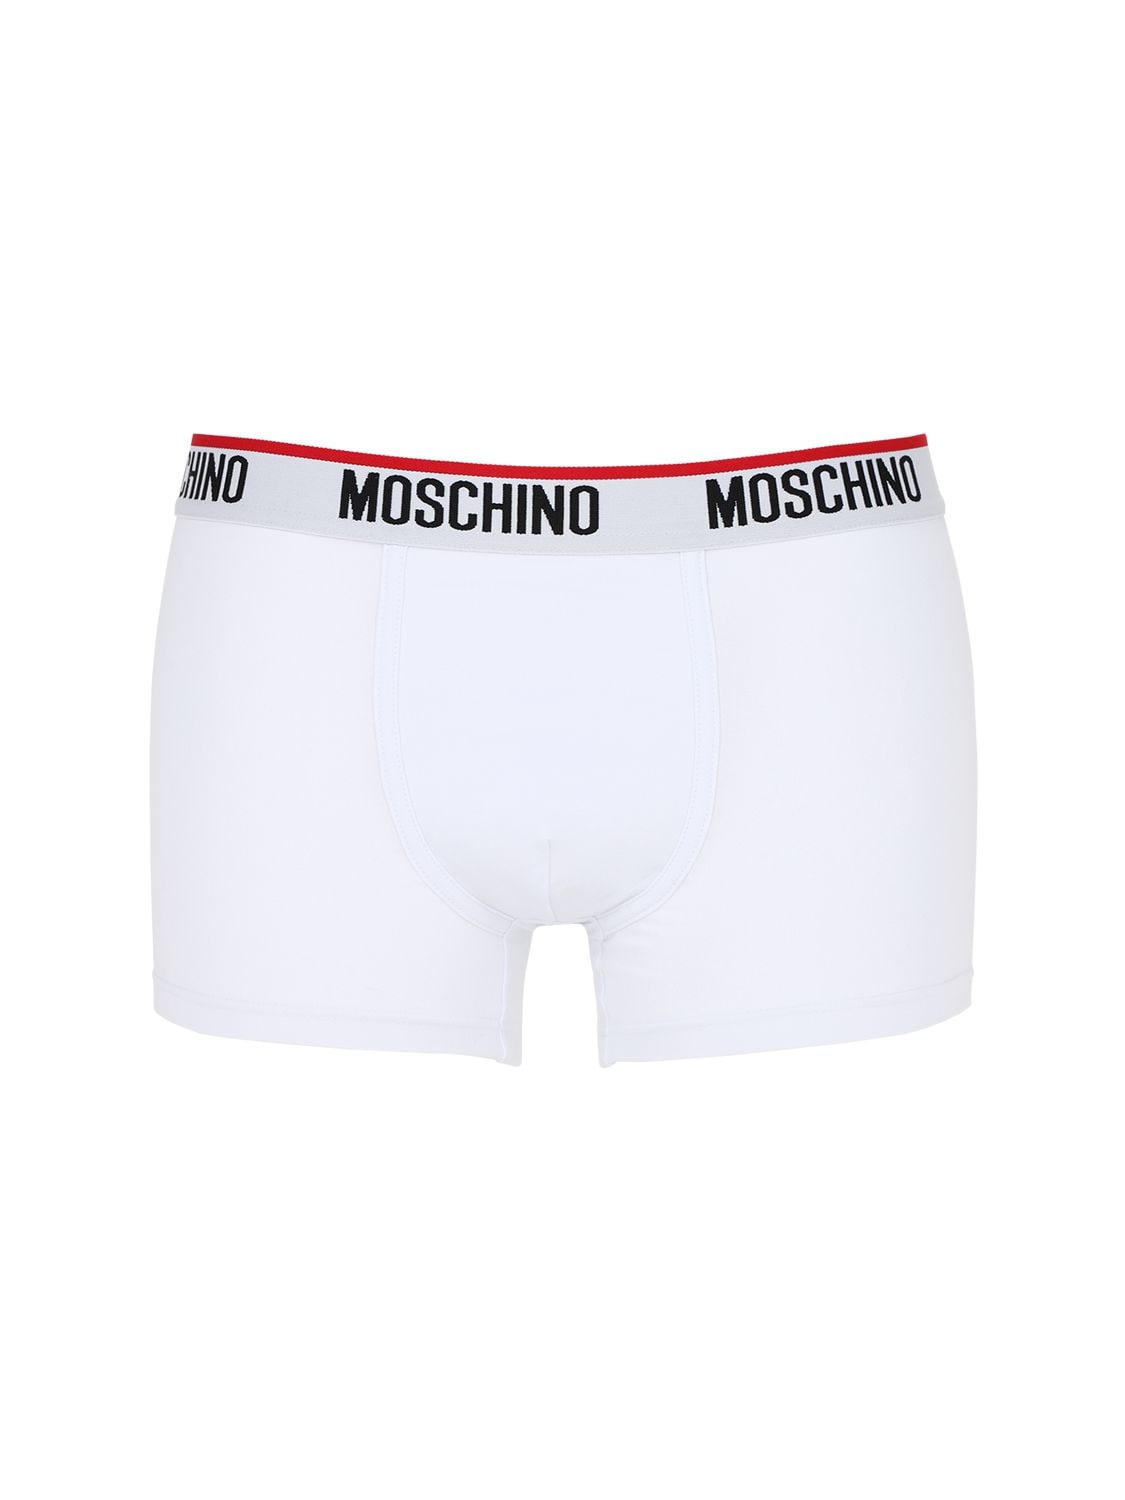 Moschino Underwear - Pack of 2 cotton jersey boxer briefs - White ...